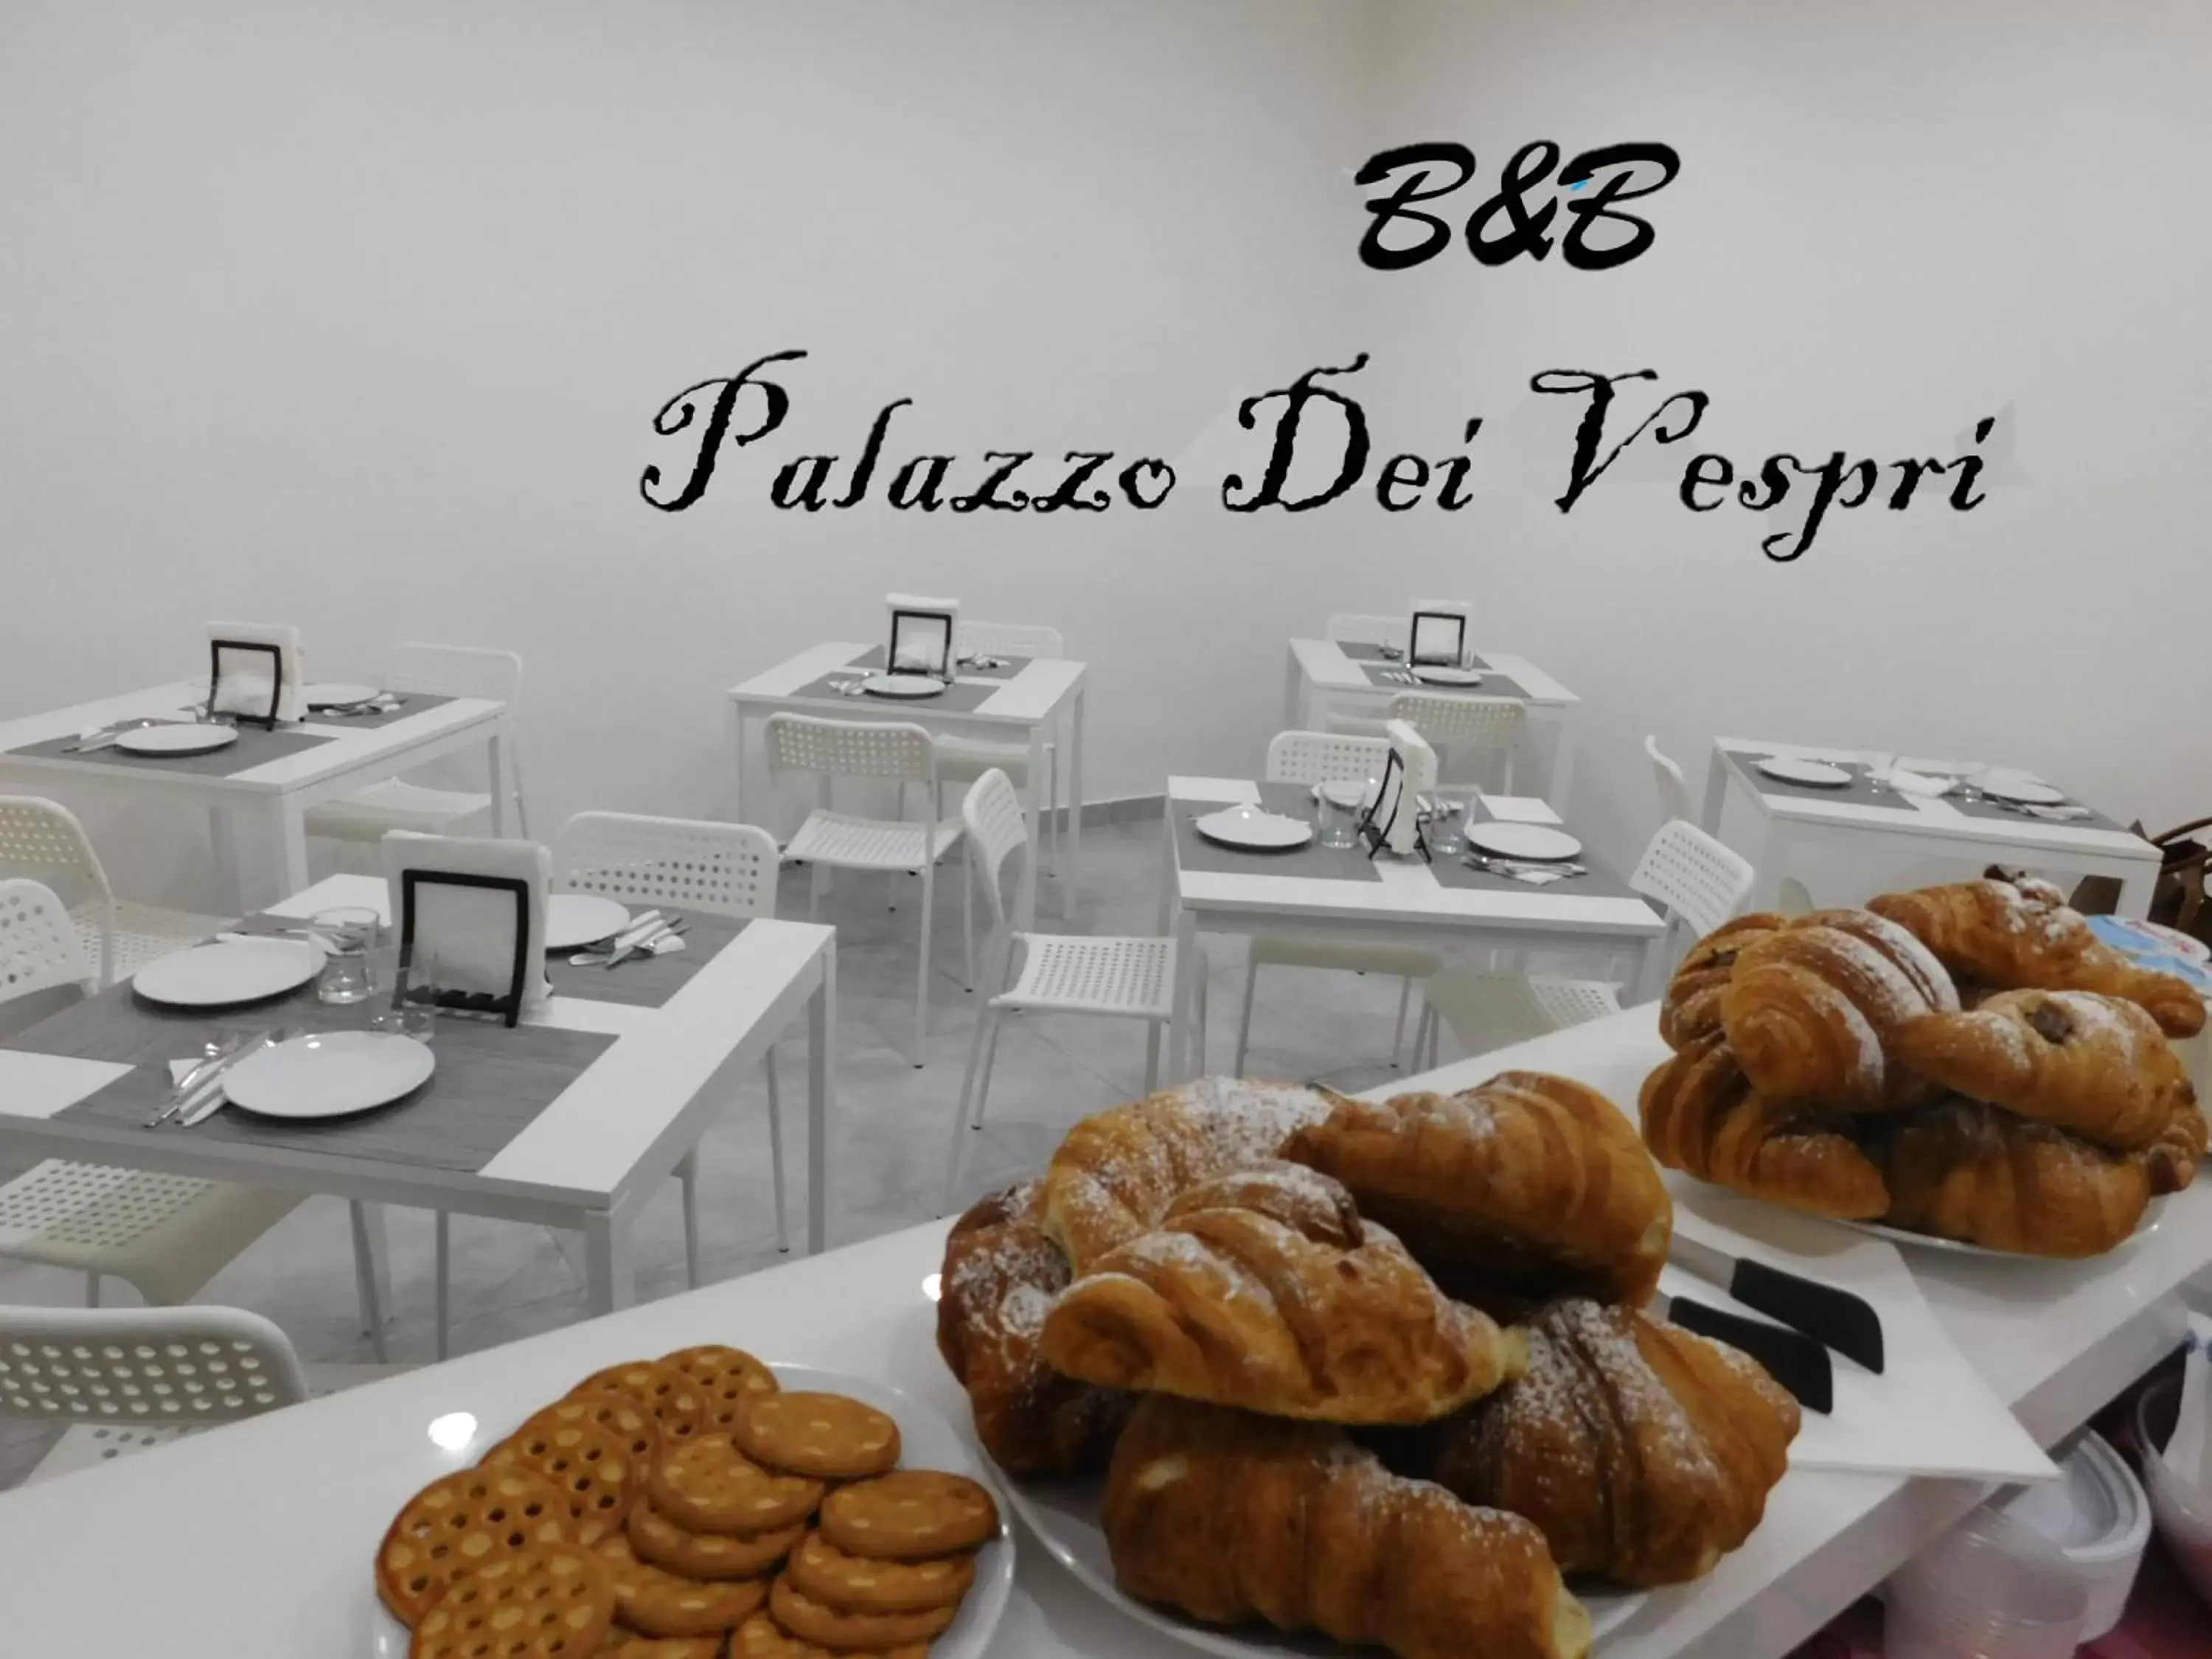 Breakfast in Palazzo dei Vespri